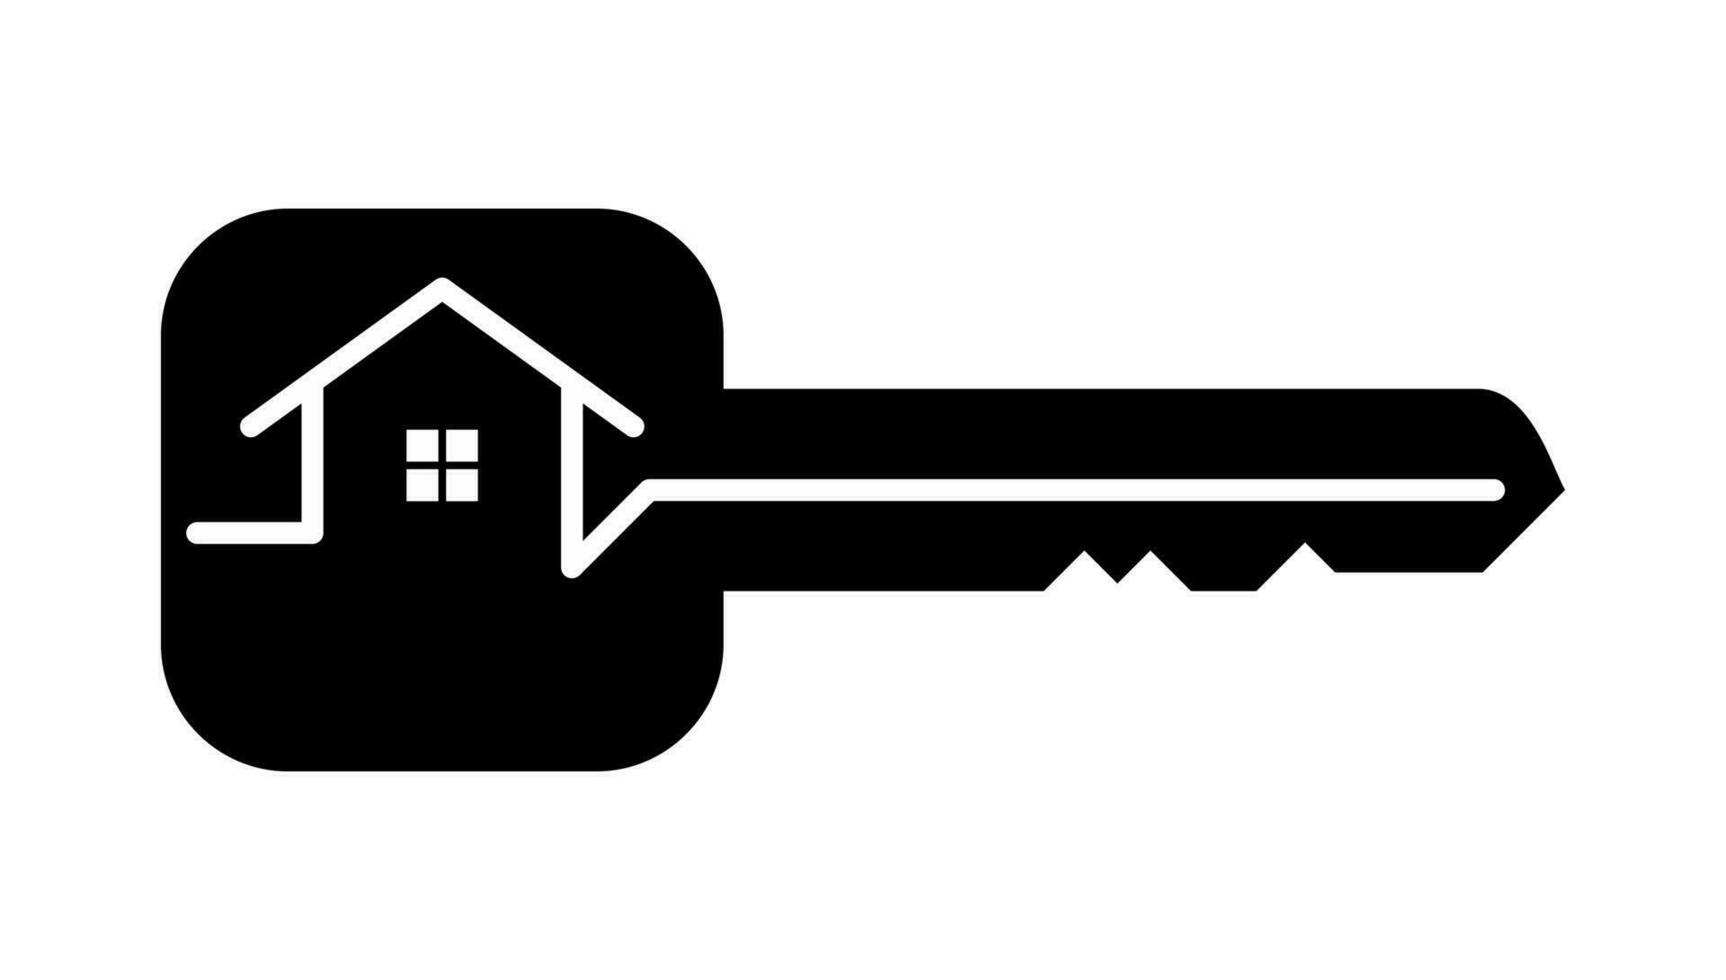 sleutel met huis monoline logo ontwerp. modieus vlak stijl sleutel icoon voor huis veiligheid, echt landgoed, app, ui, web . vector illustratie